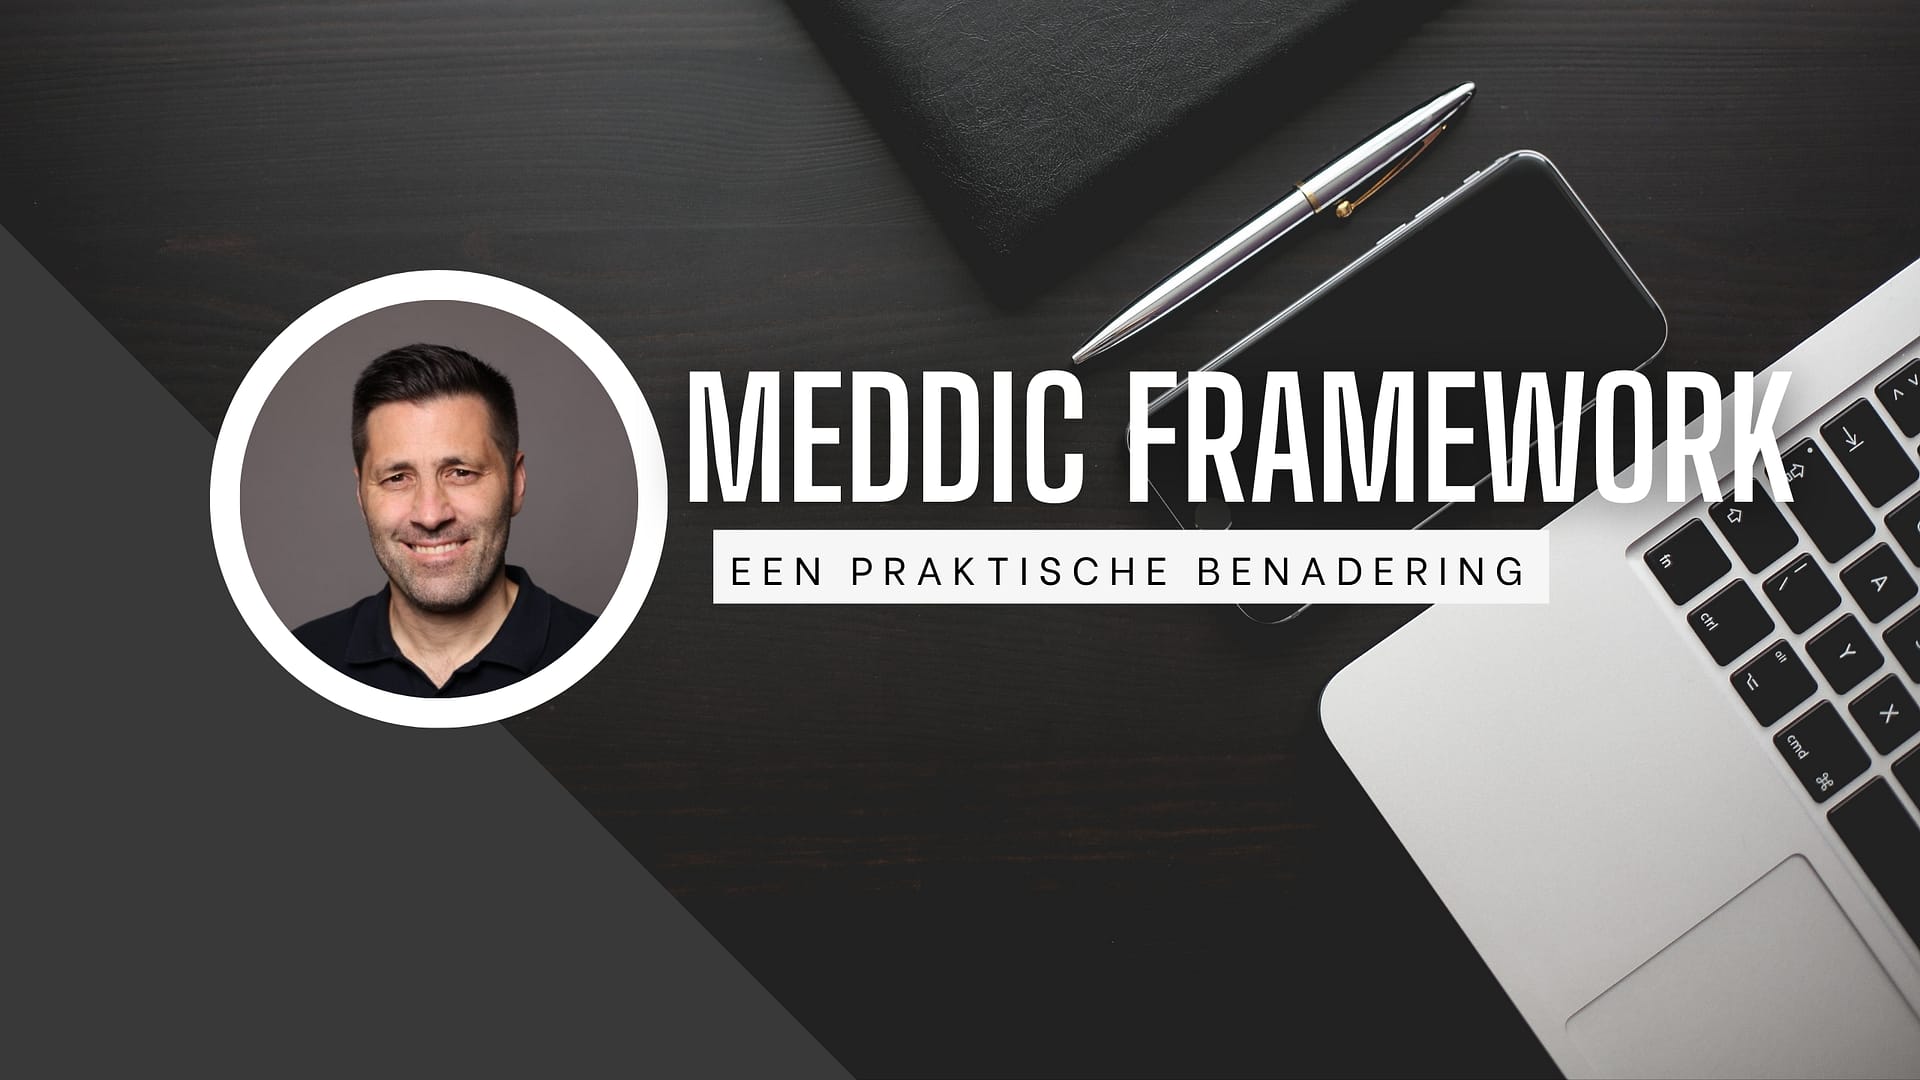 MEDDIC framework